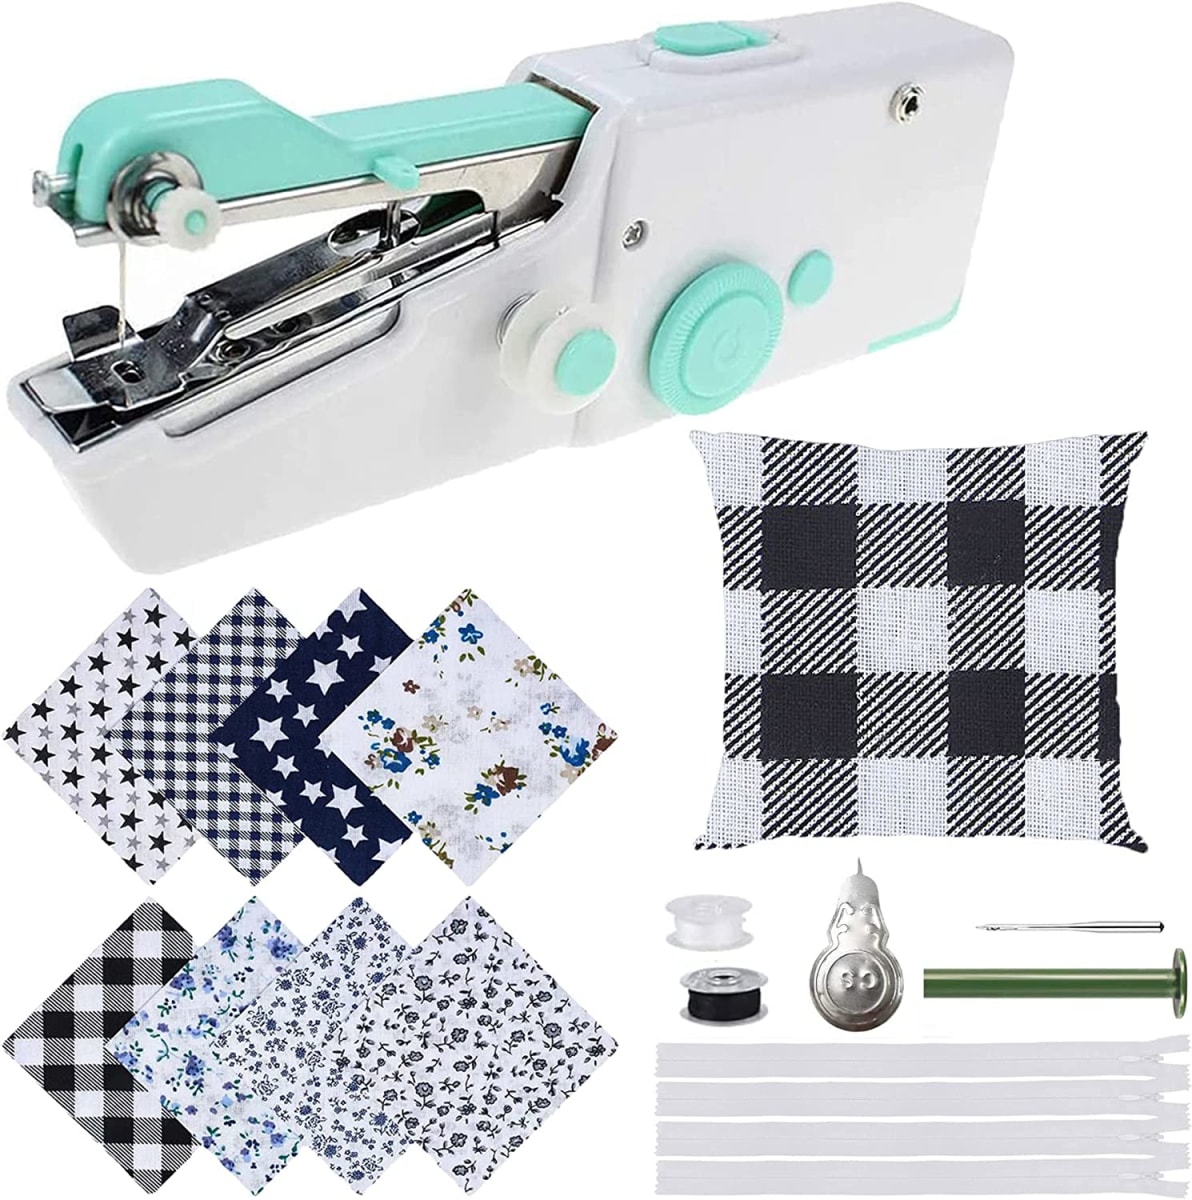 Handheld Sewing Machine Kit